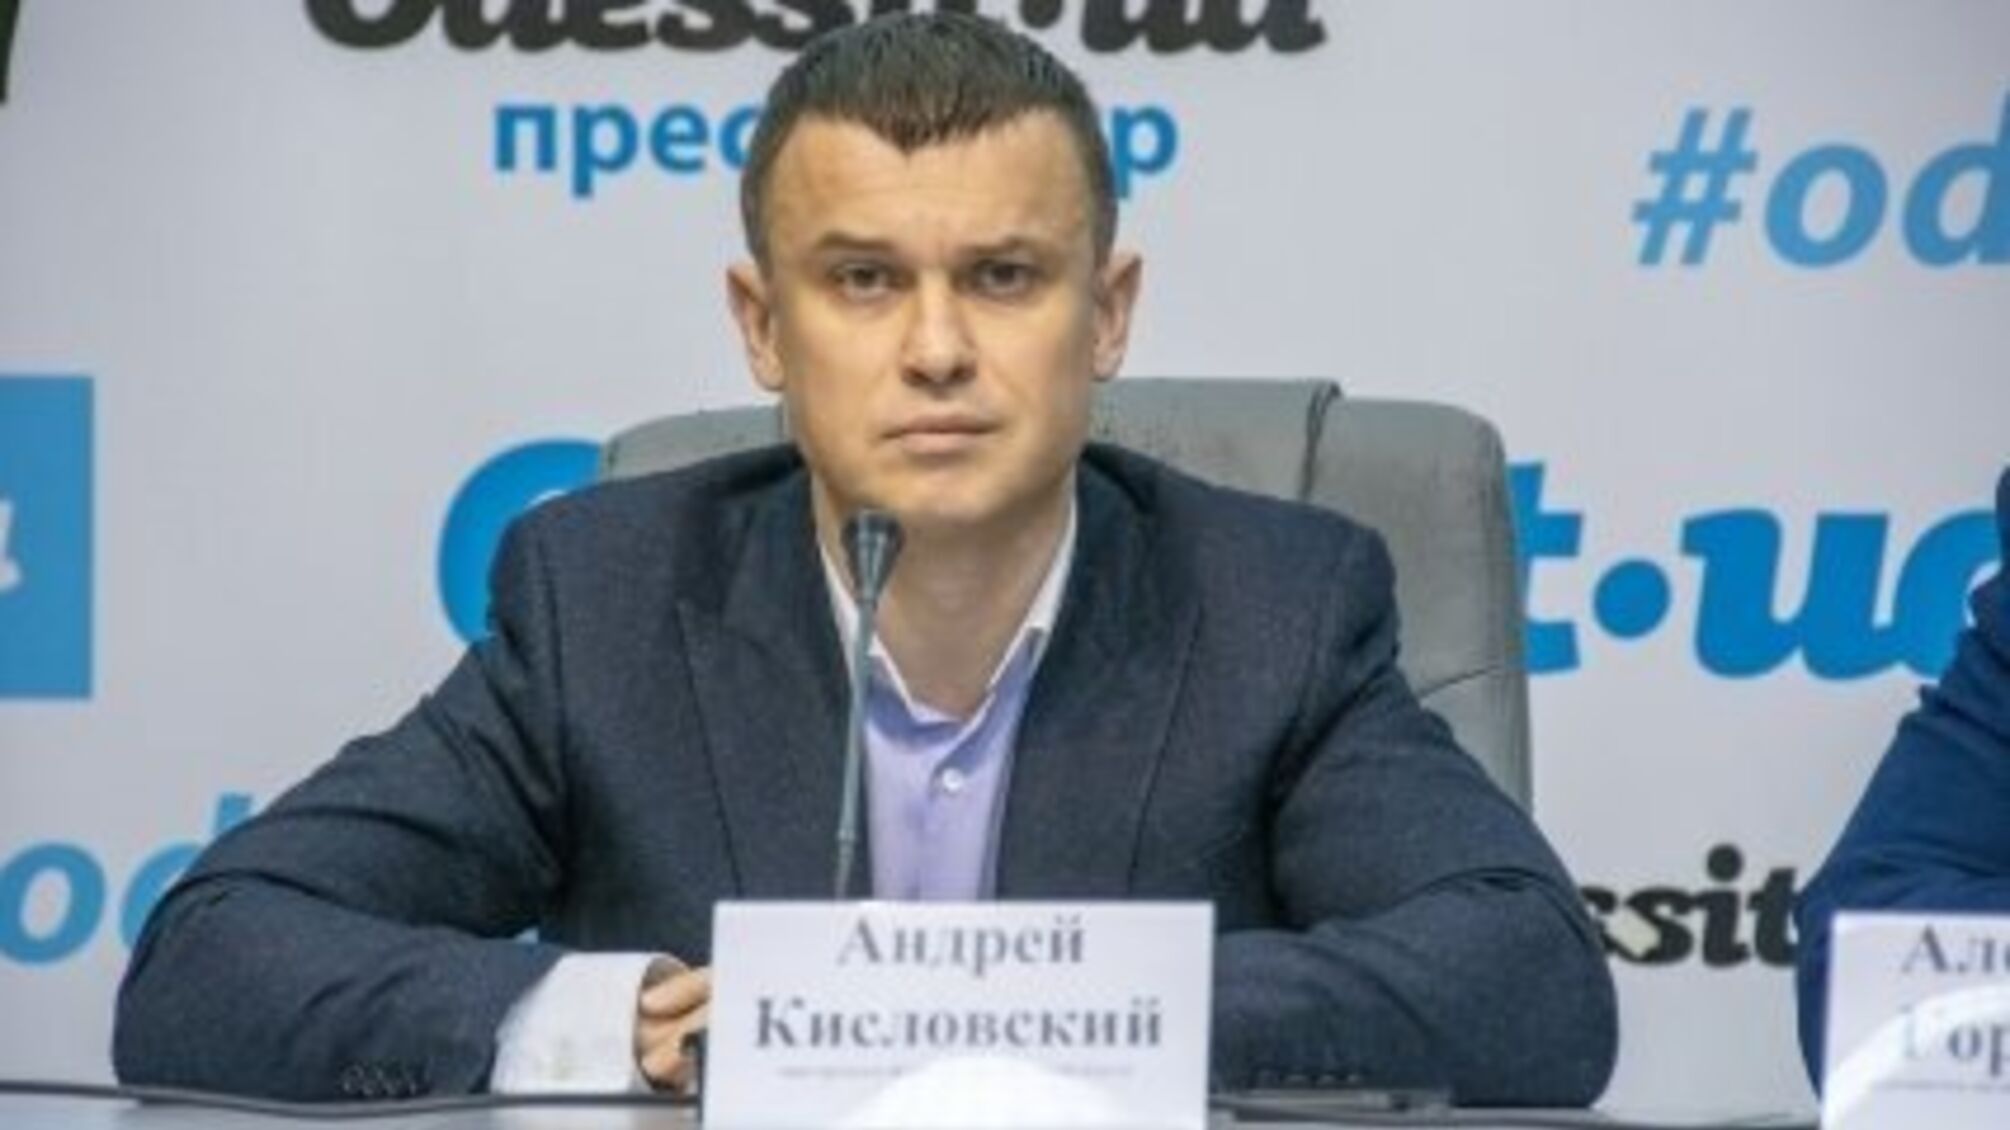 Курив у сесійній залі: депутат Одеської міської ради Андрій Кисловський знову оскандалився (відео)